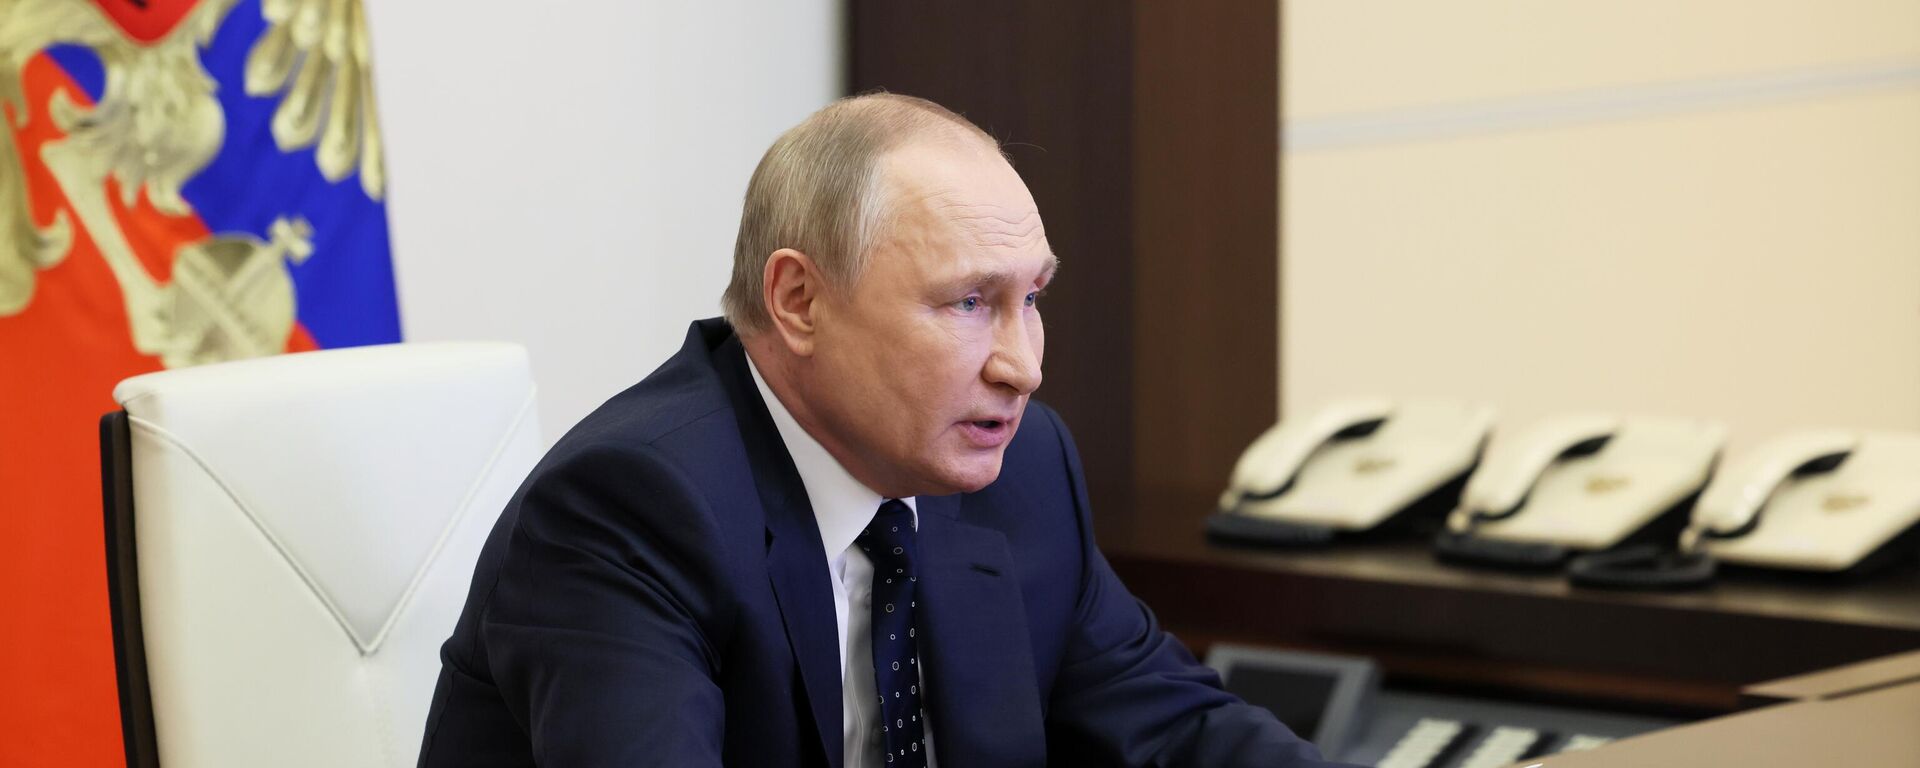 Vladimir Putin, presidente da Rússia, durante reunião do Conselho de Segurança russo em 20 de maio de 2022 - Sputnik Brasil, 1920, 20.05.2022